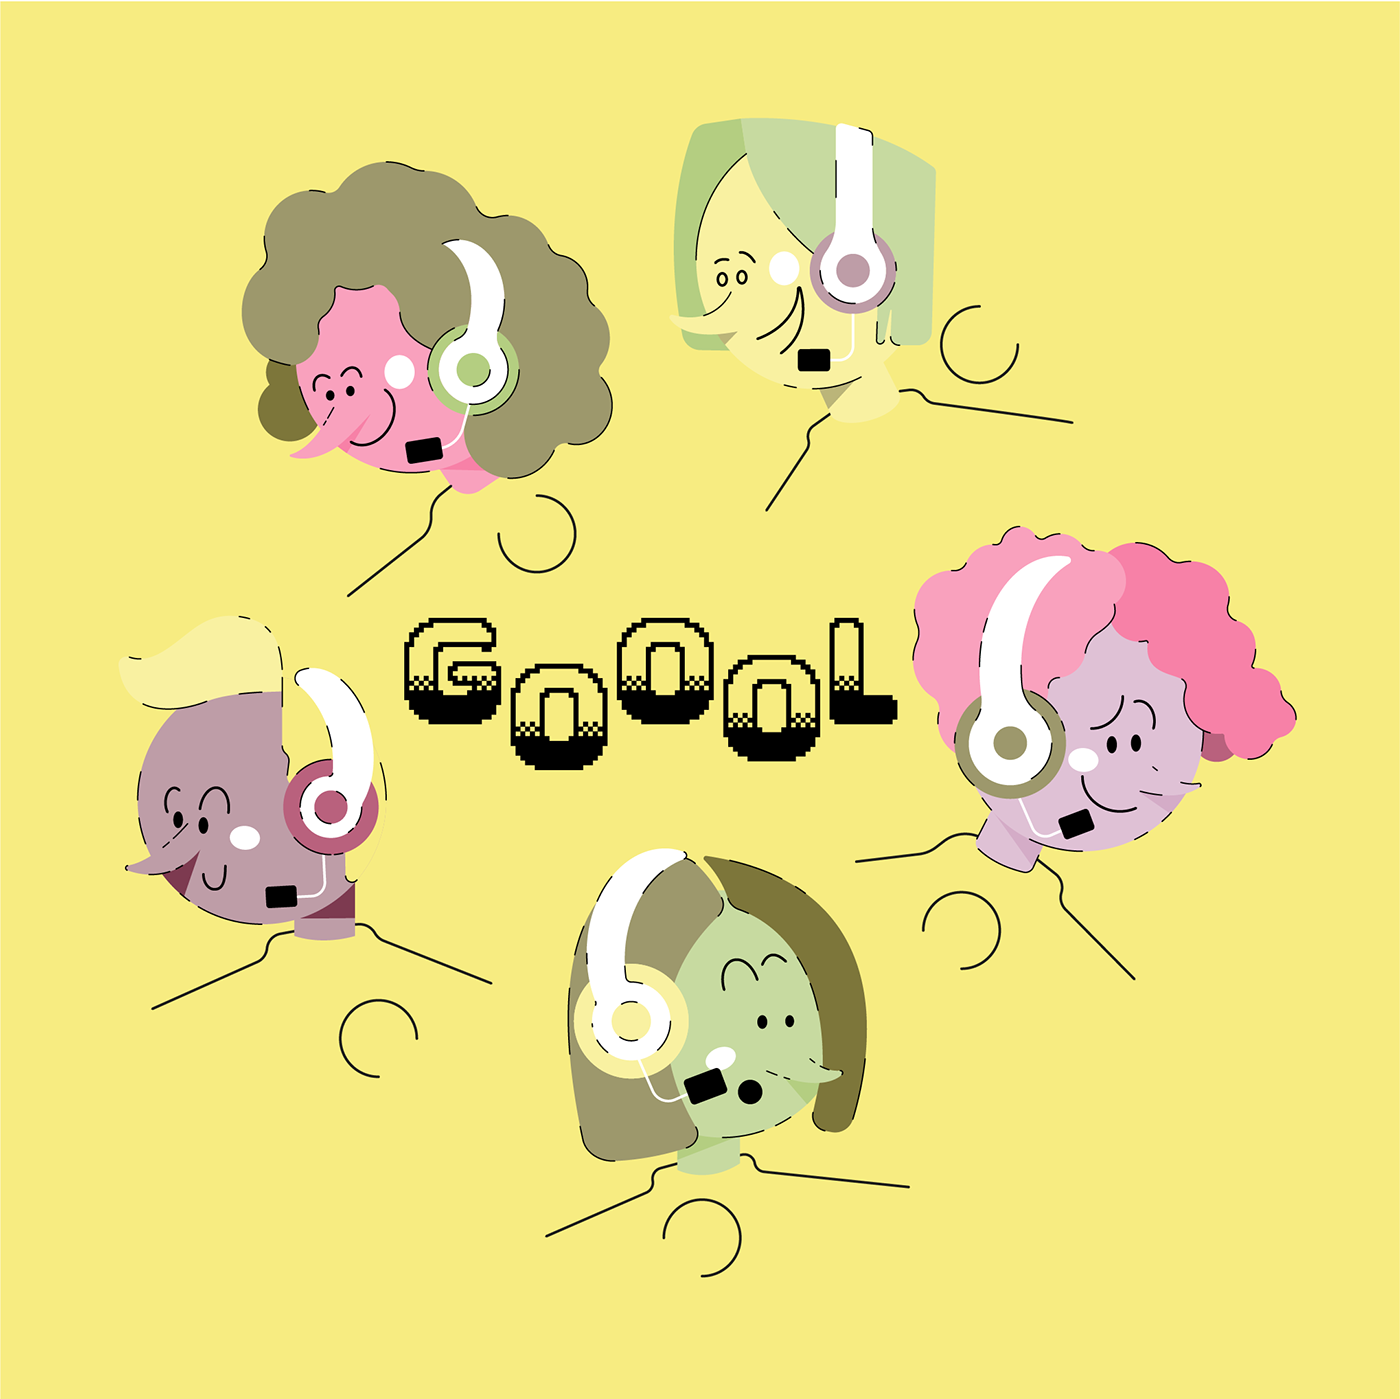 Ilustração vetorial contendo 5 mulheres narradoras, com a palavra "Gol" ao centro.